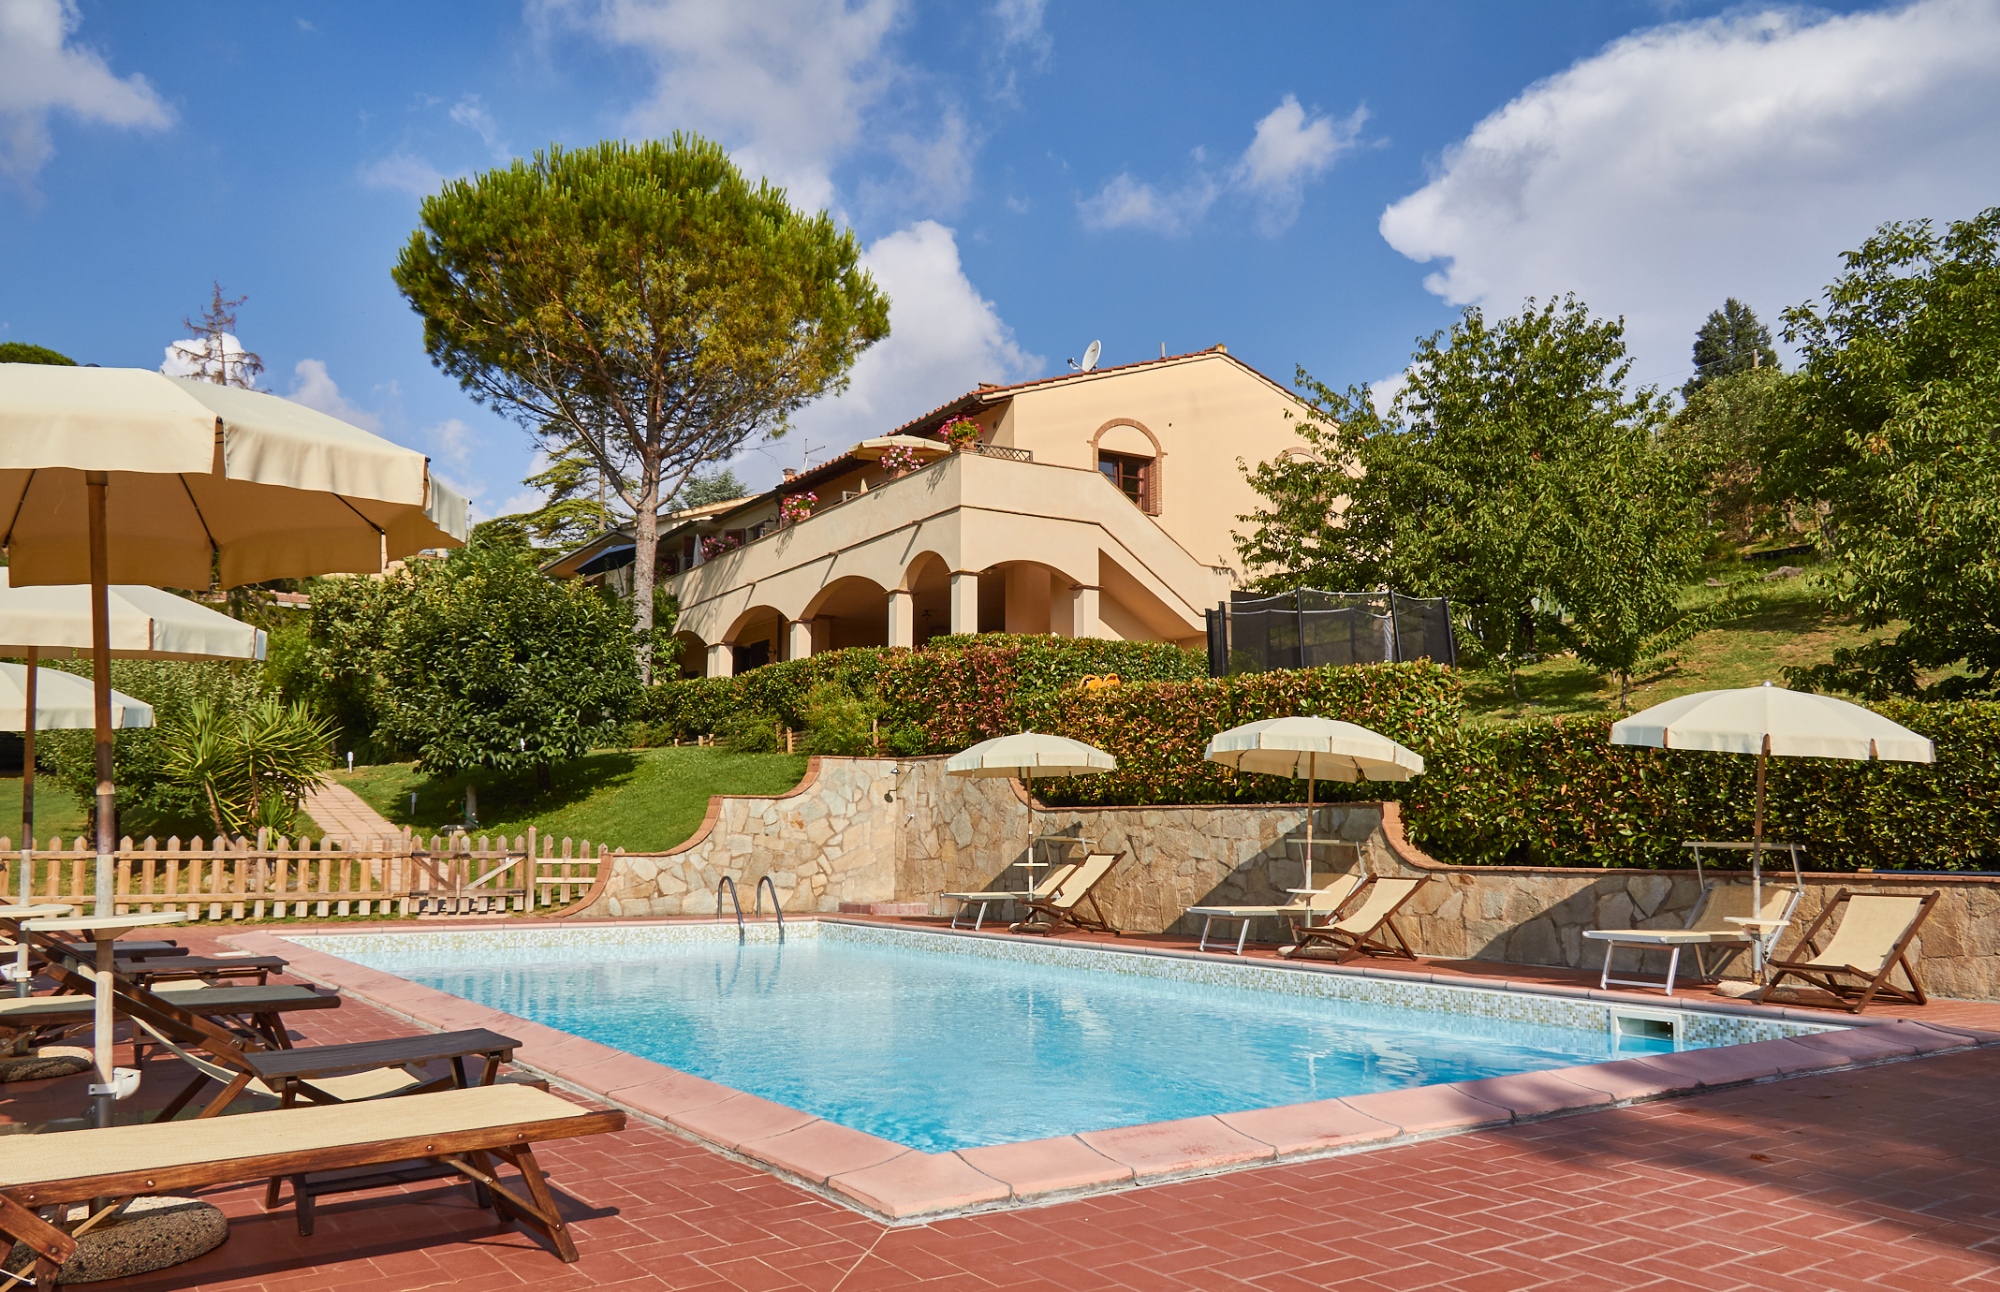 Appartamenti con piscina ideali per famiglie con bambini in vacanza in Toscana 